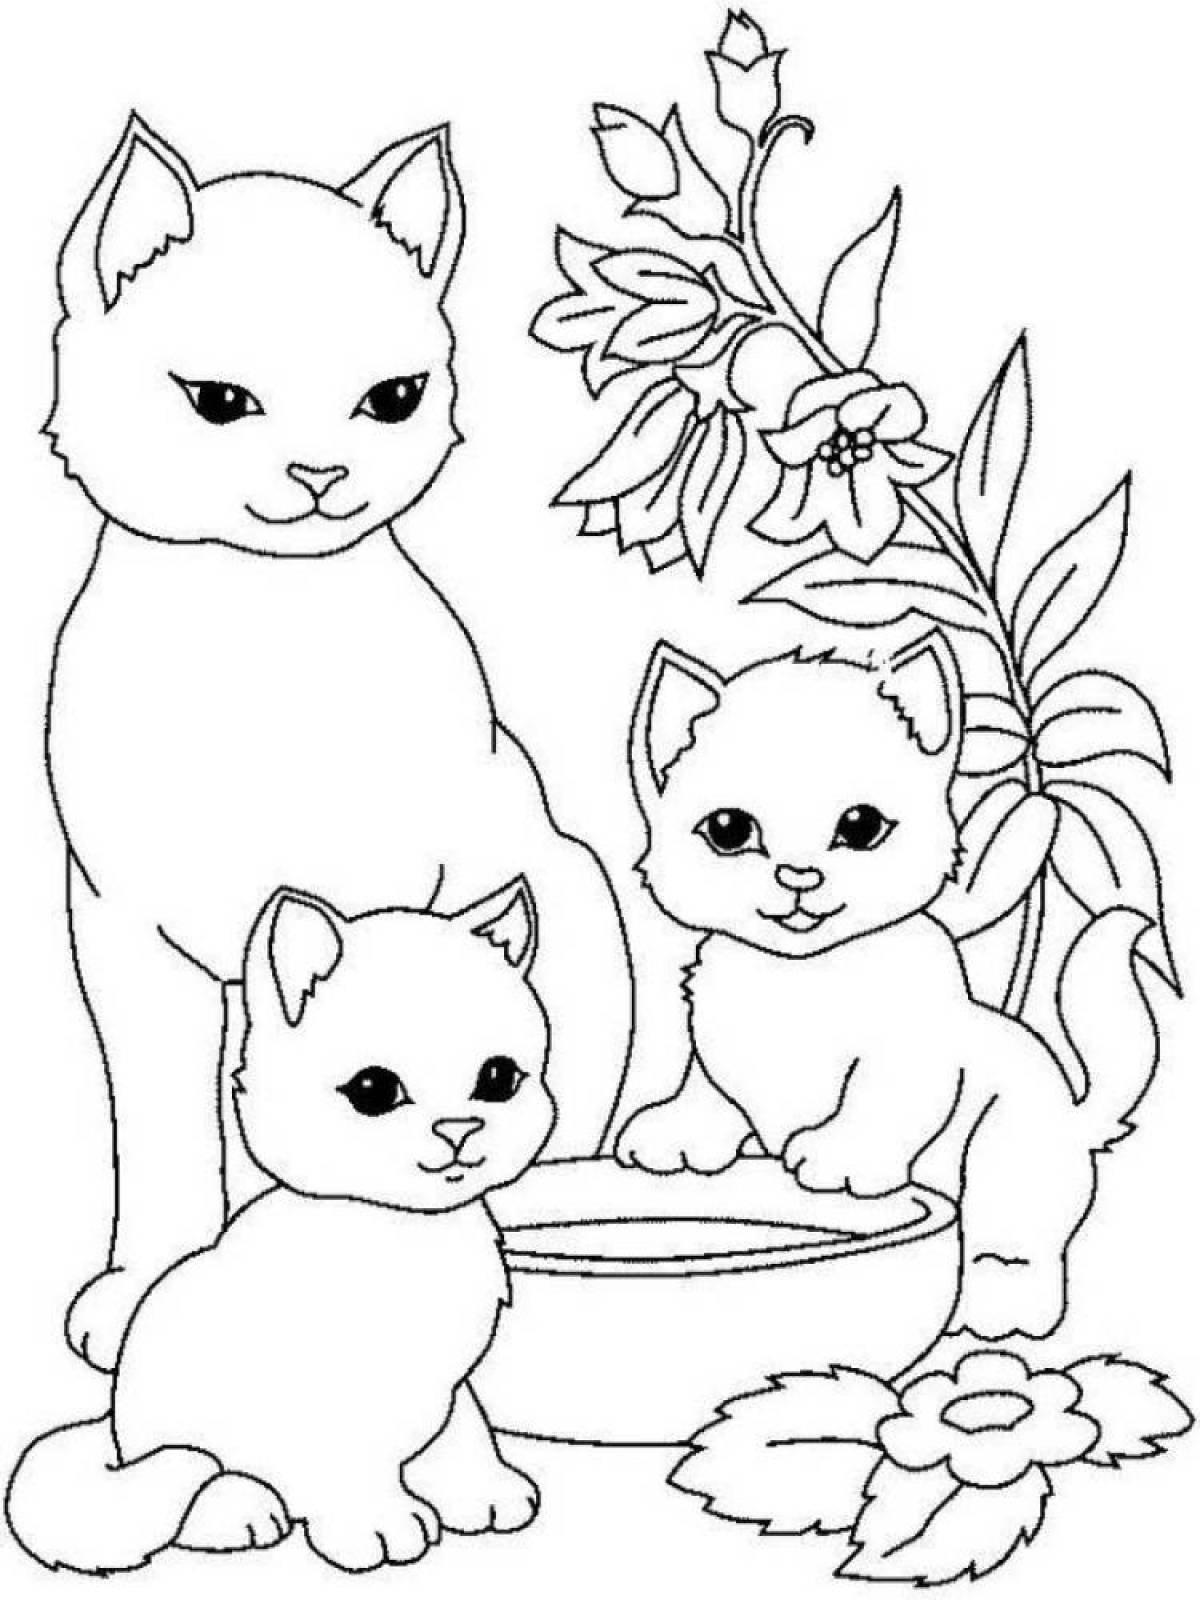 Joyful kitten coloring for kids